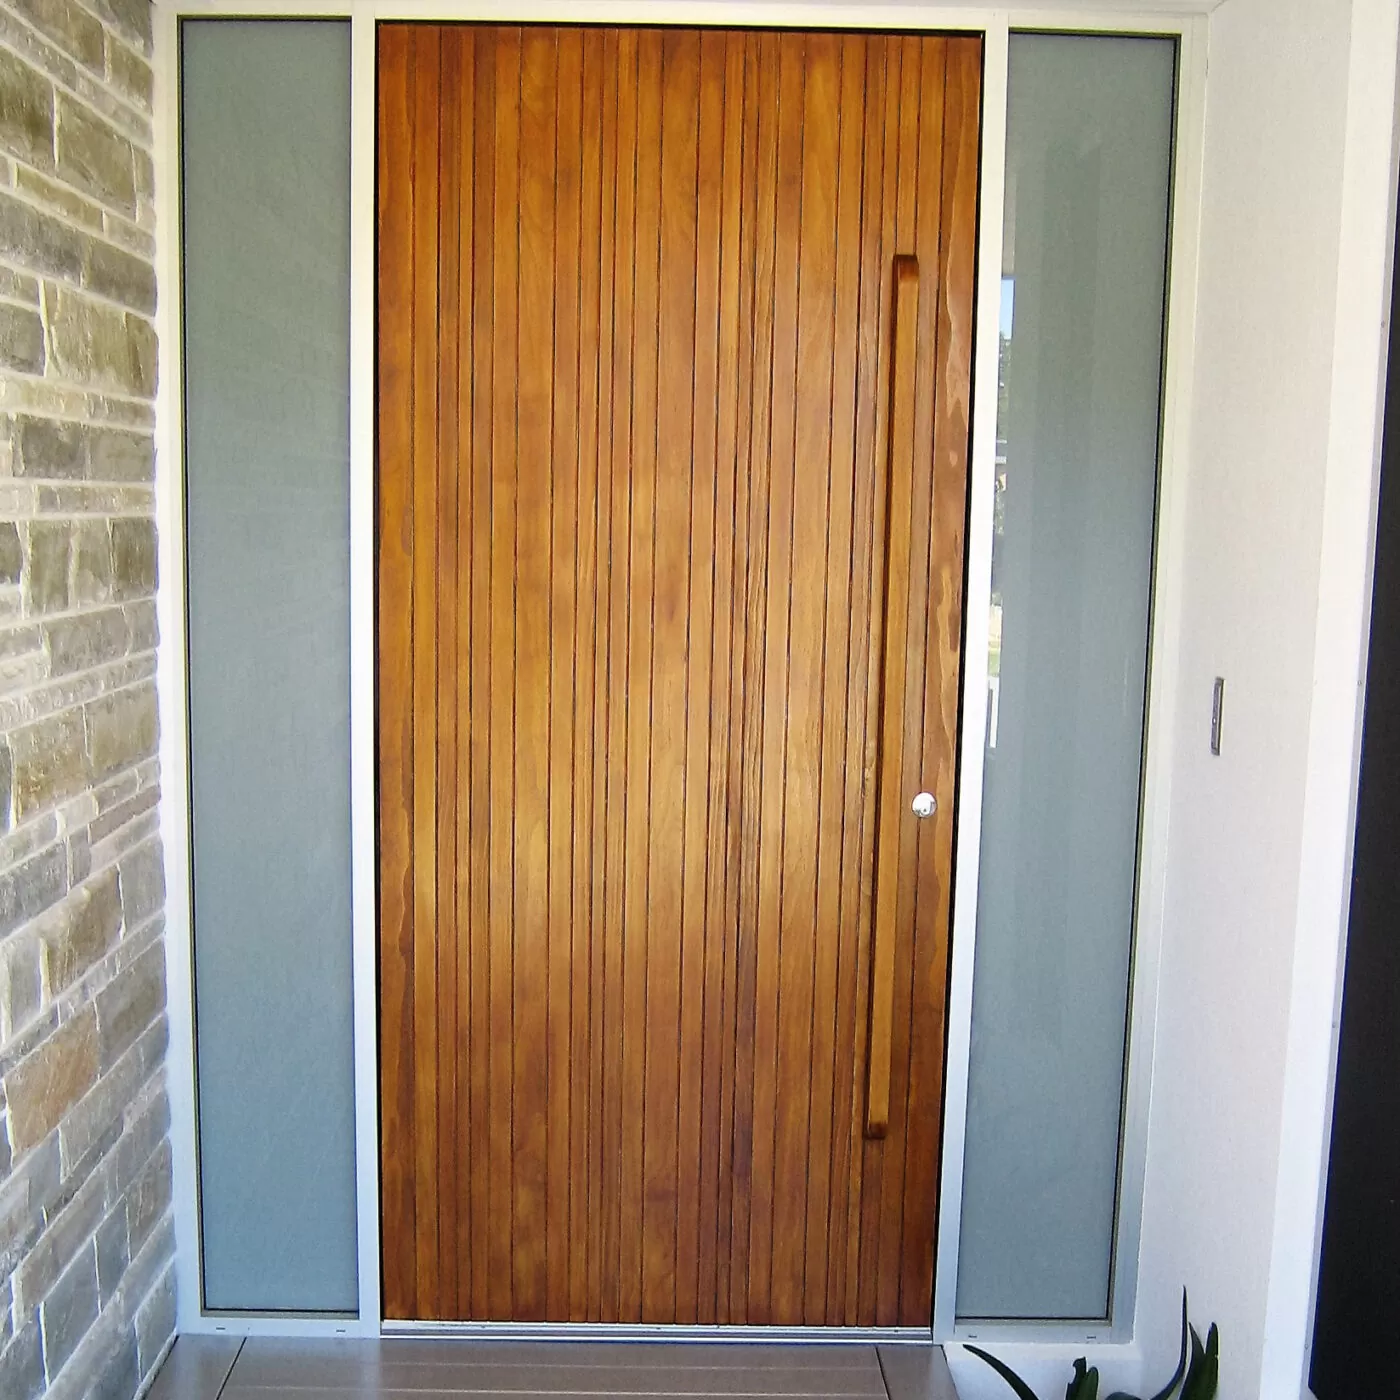 Accoya door in Hawkstone street WA